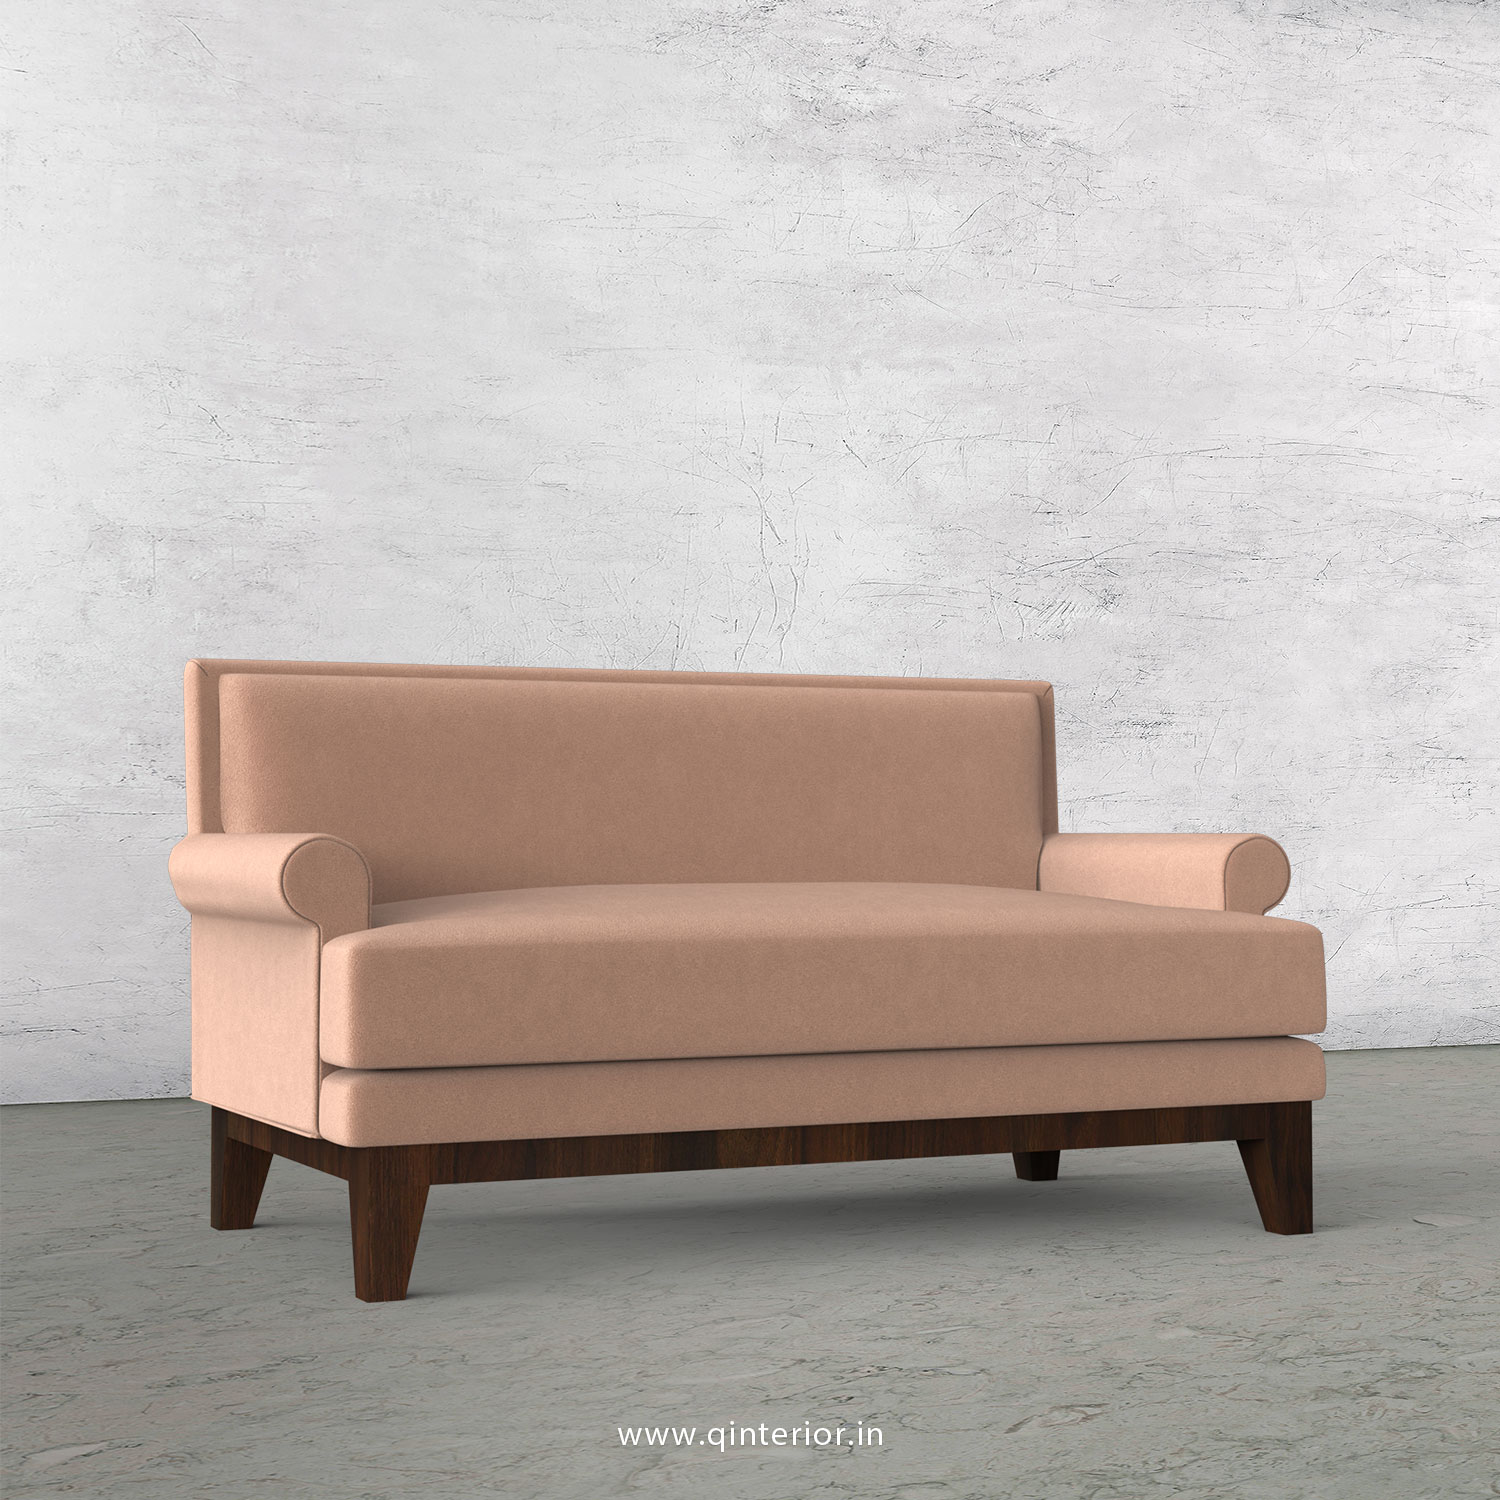 Aviana 2 Seater Sofa in Velvet Fabric - SFA001 VL16